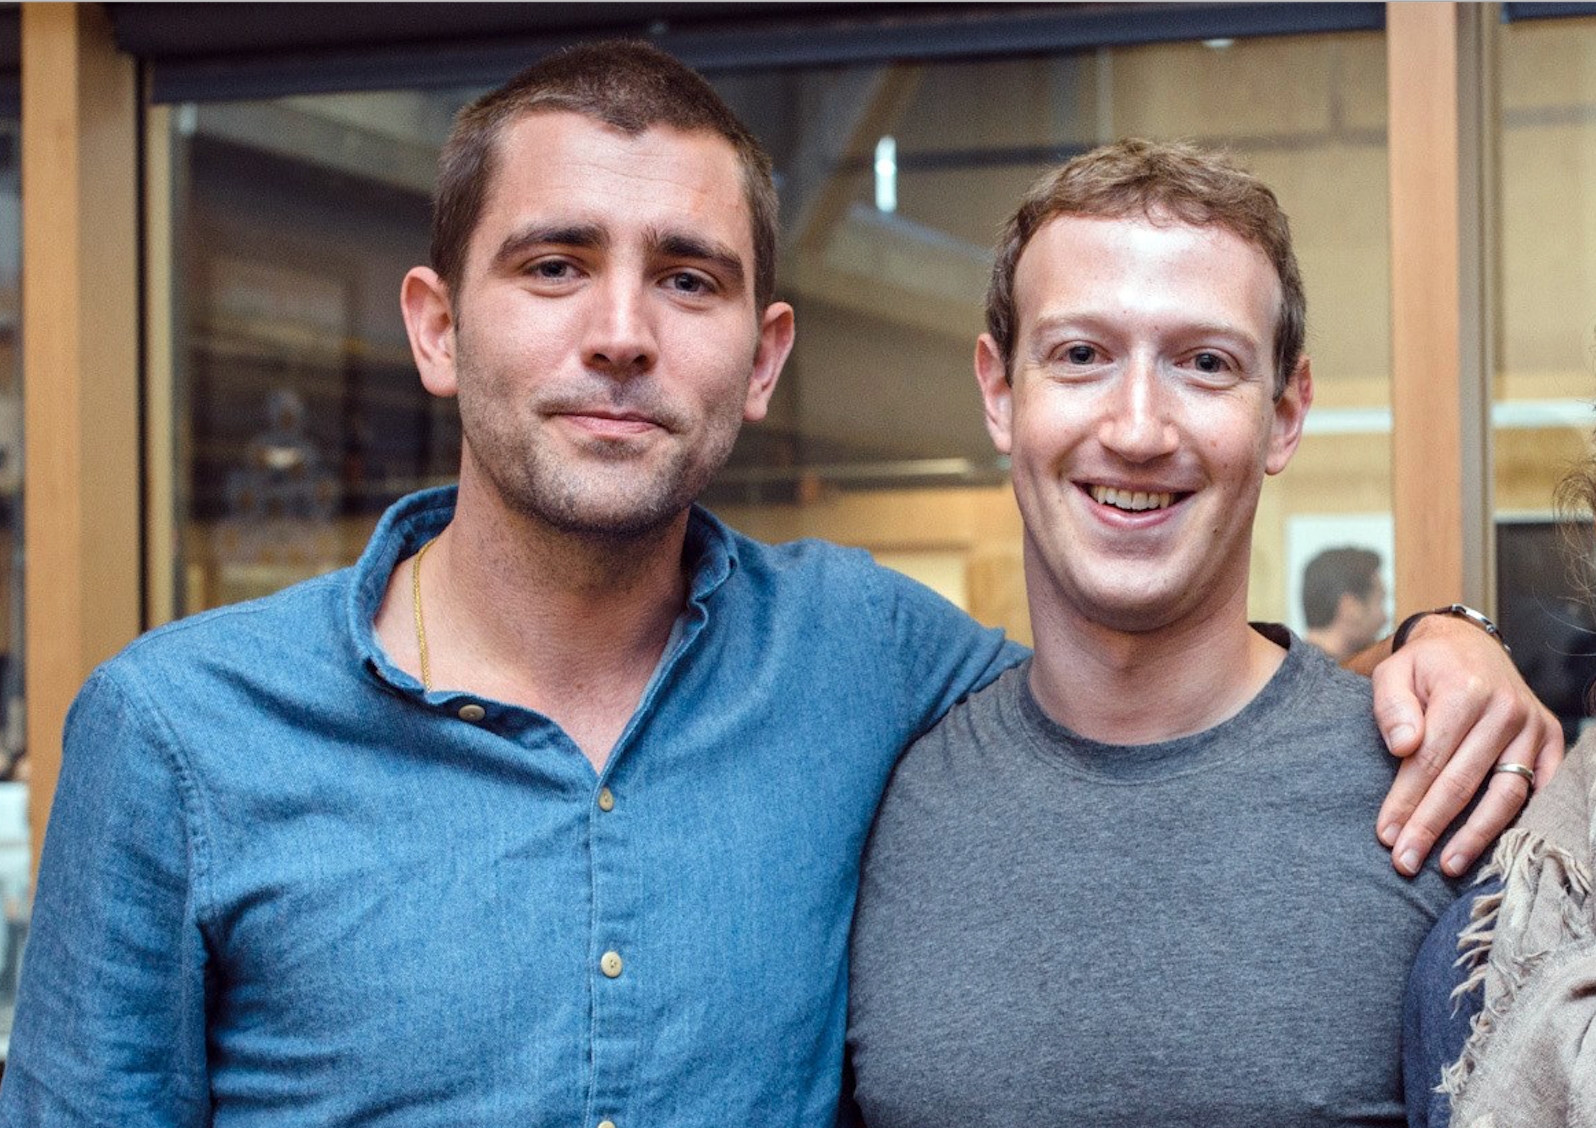 Toppsjef slutter: - Facebook fortjener ledere som gleder seg over den nye kursen